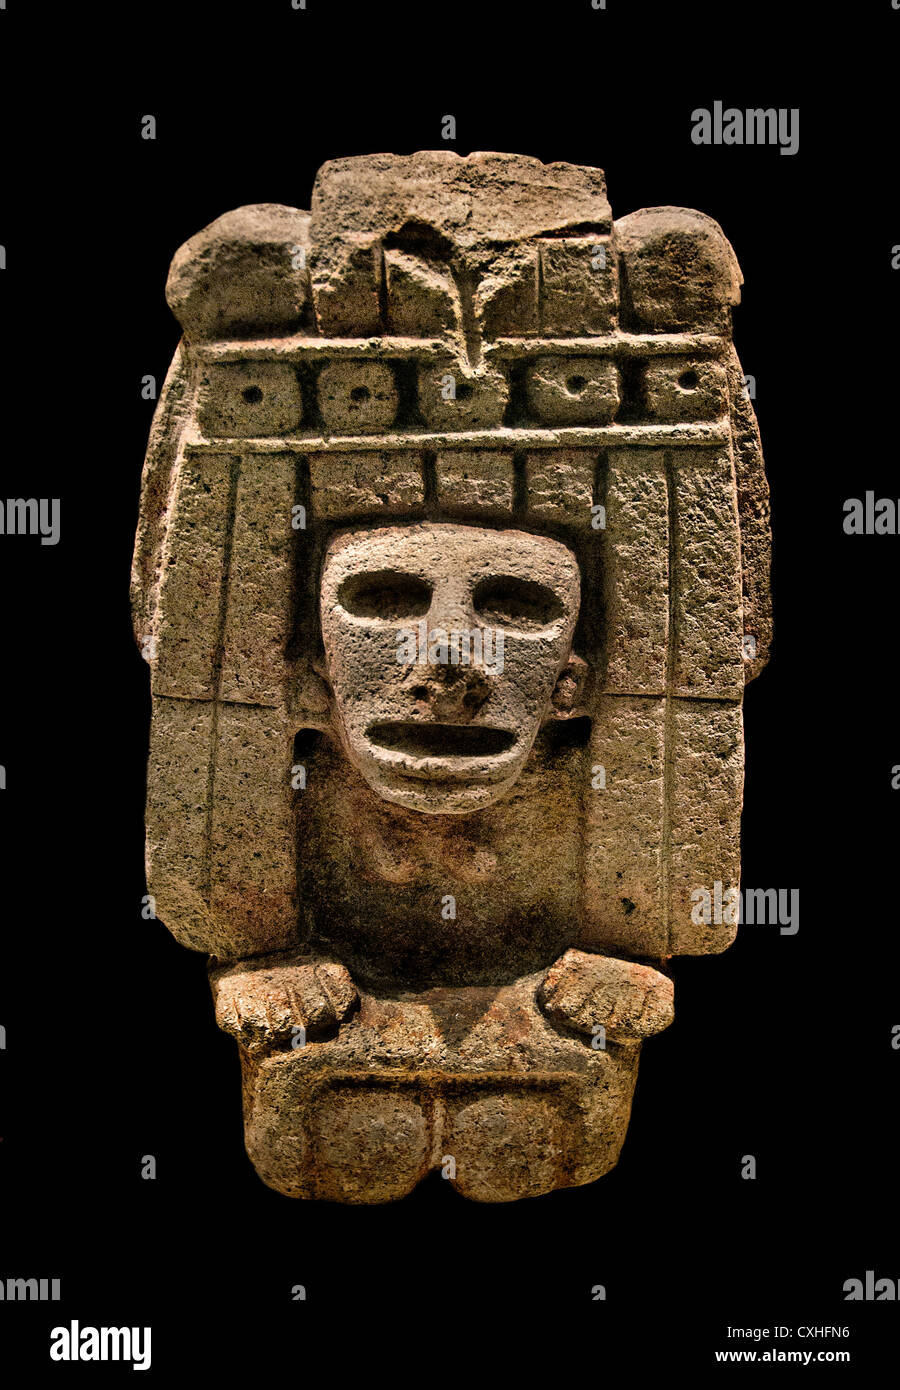 Divinité maïs Chicomecoat 15ème siècle Mexique Méso-amérique 35,56 cm x basalte Aztèque Banque D'Images